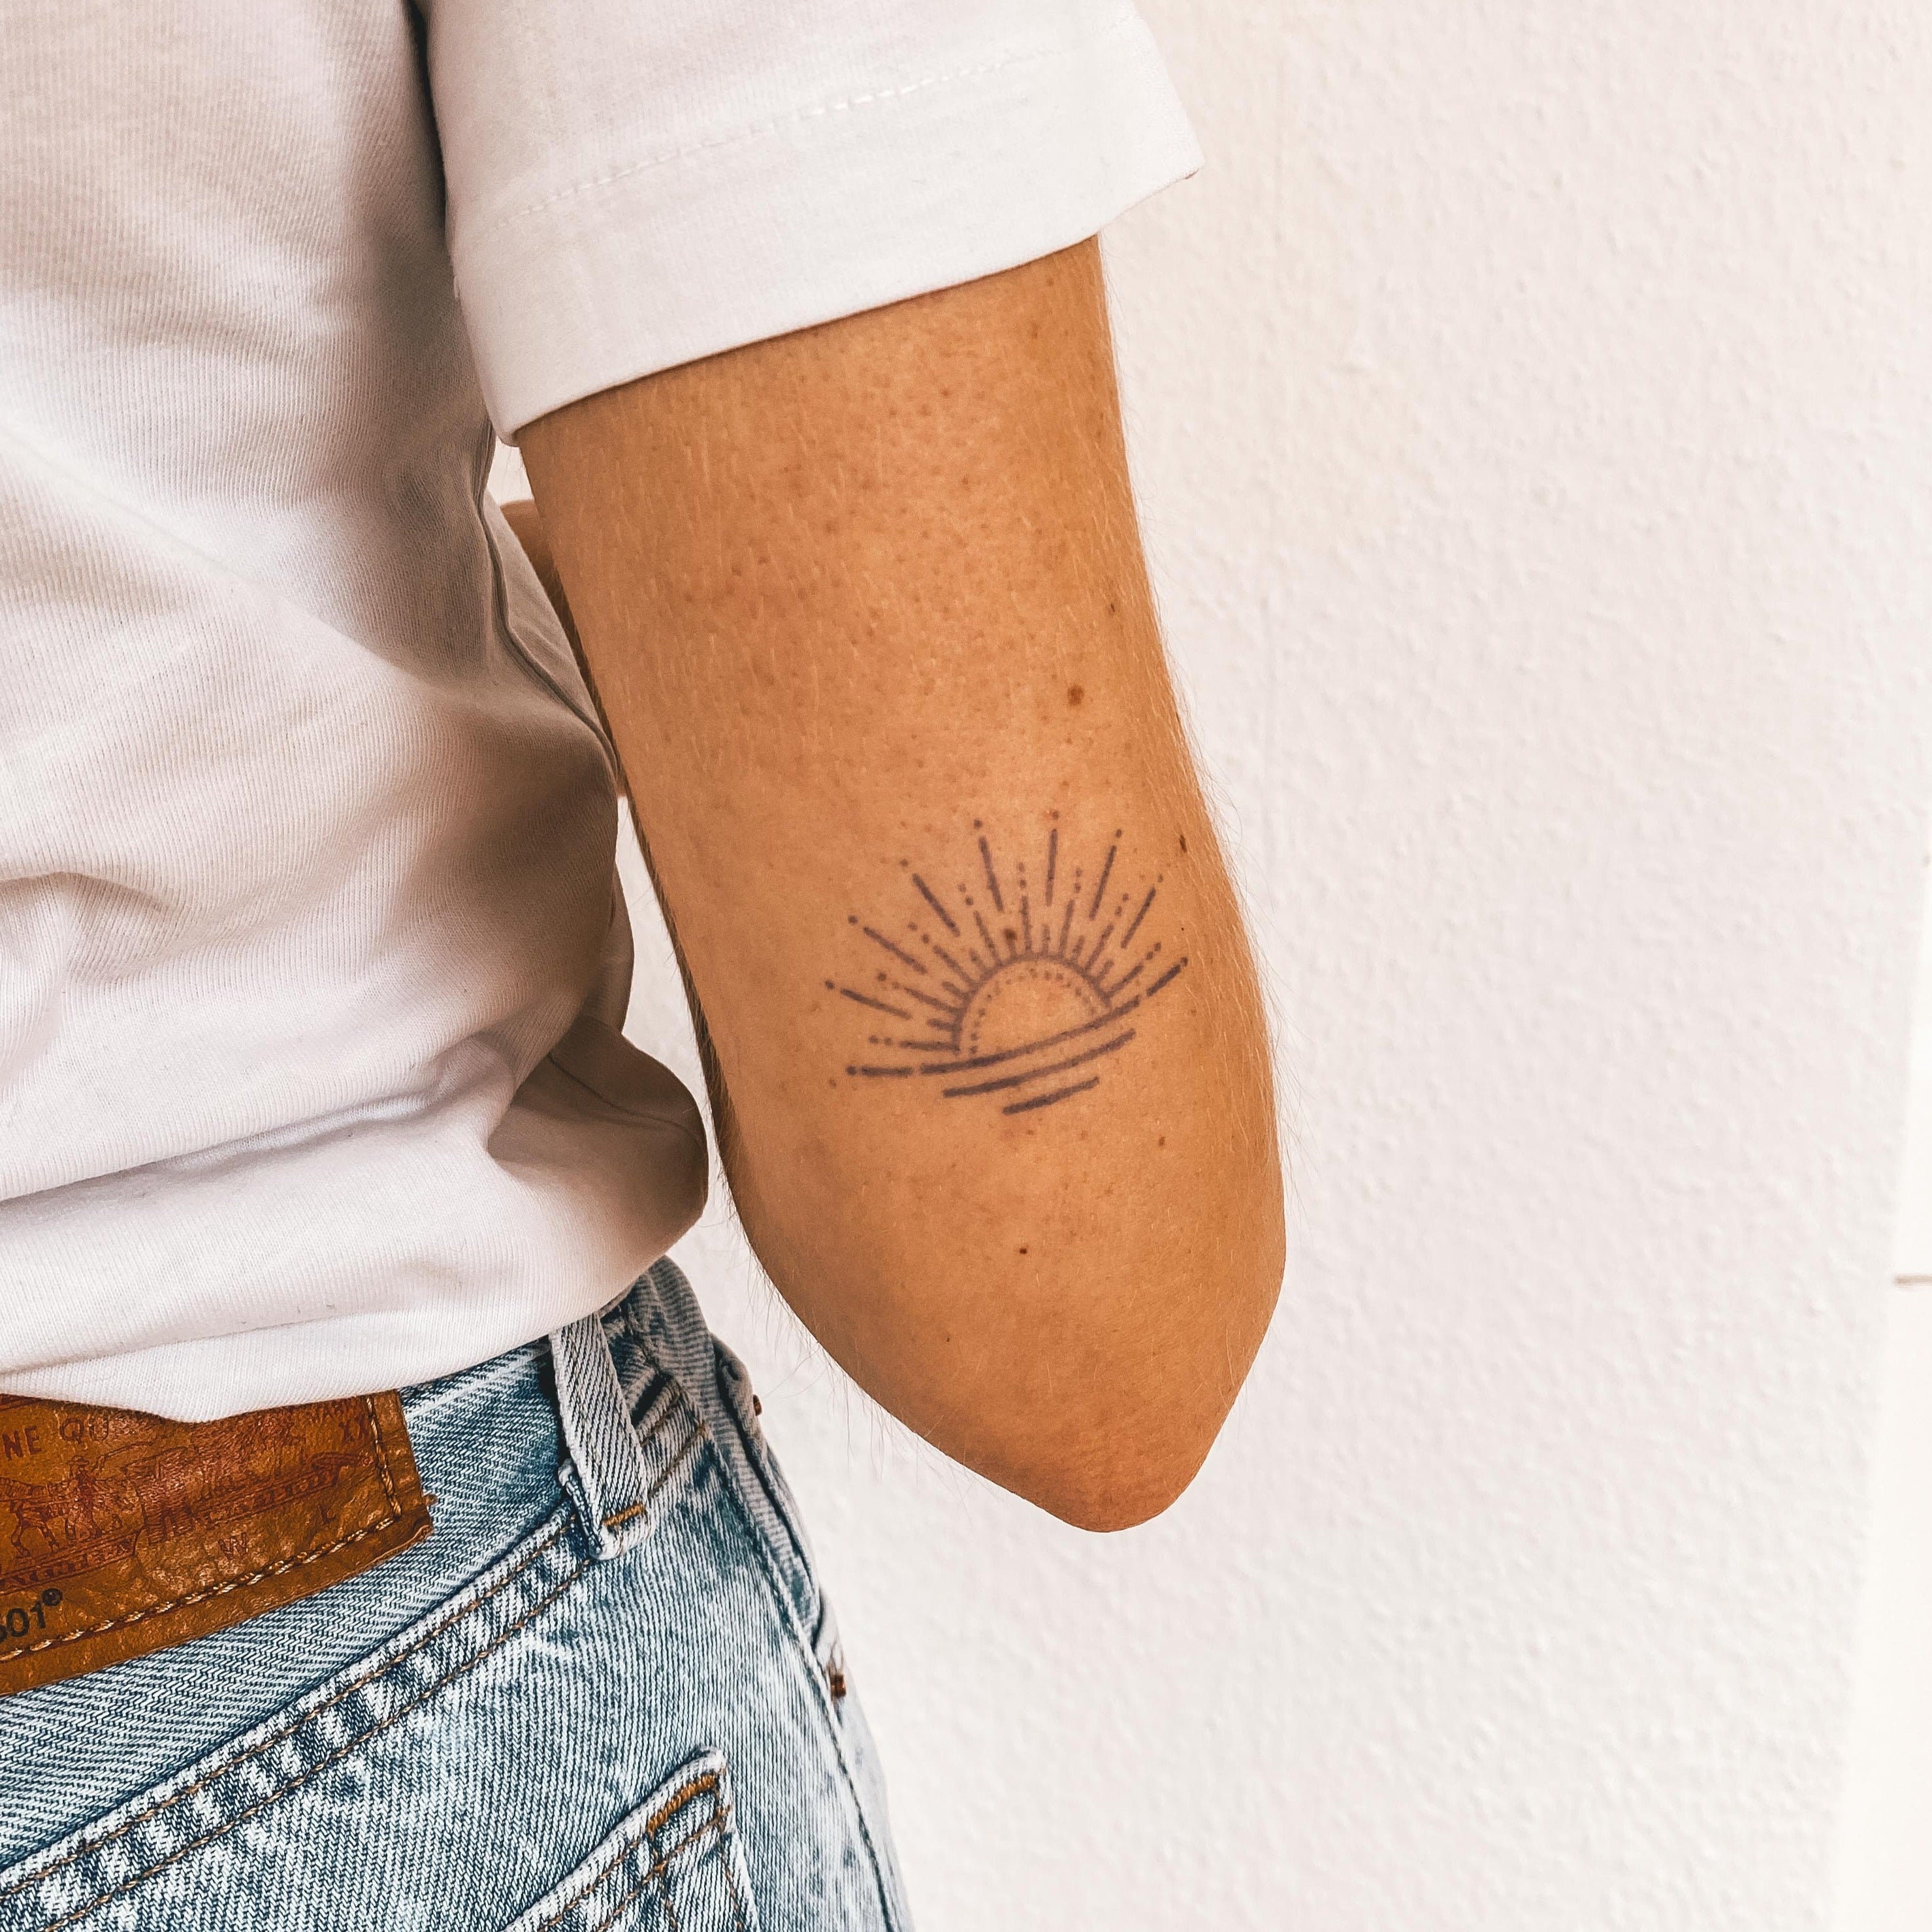 Minimalist black sunrise tattoo on the right arm | Sun tattoo designs, Sunrise  tattoo, Tattoos for guys